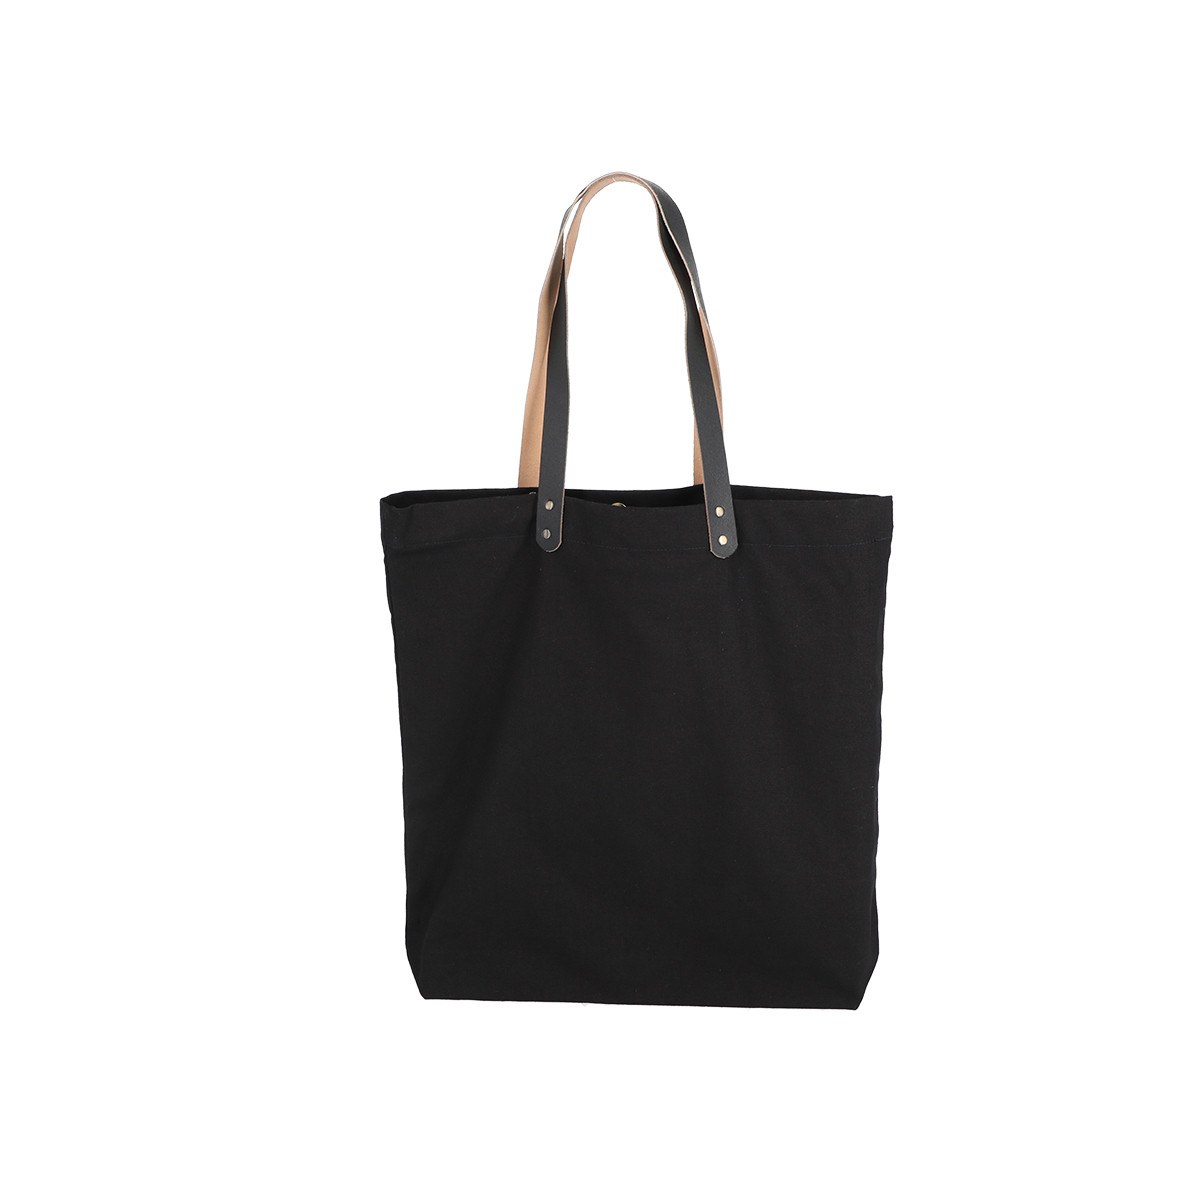 Bolsa de Uso Personal color negro con manillas de cuero 45x45x8 (cm)